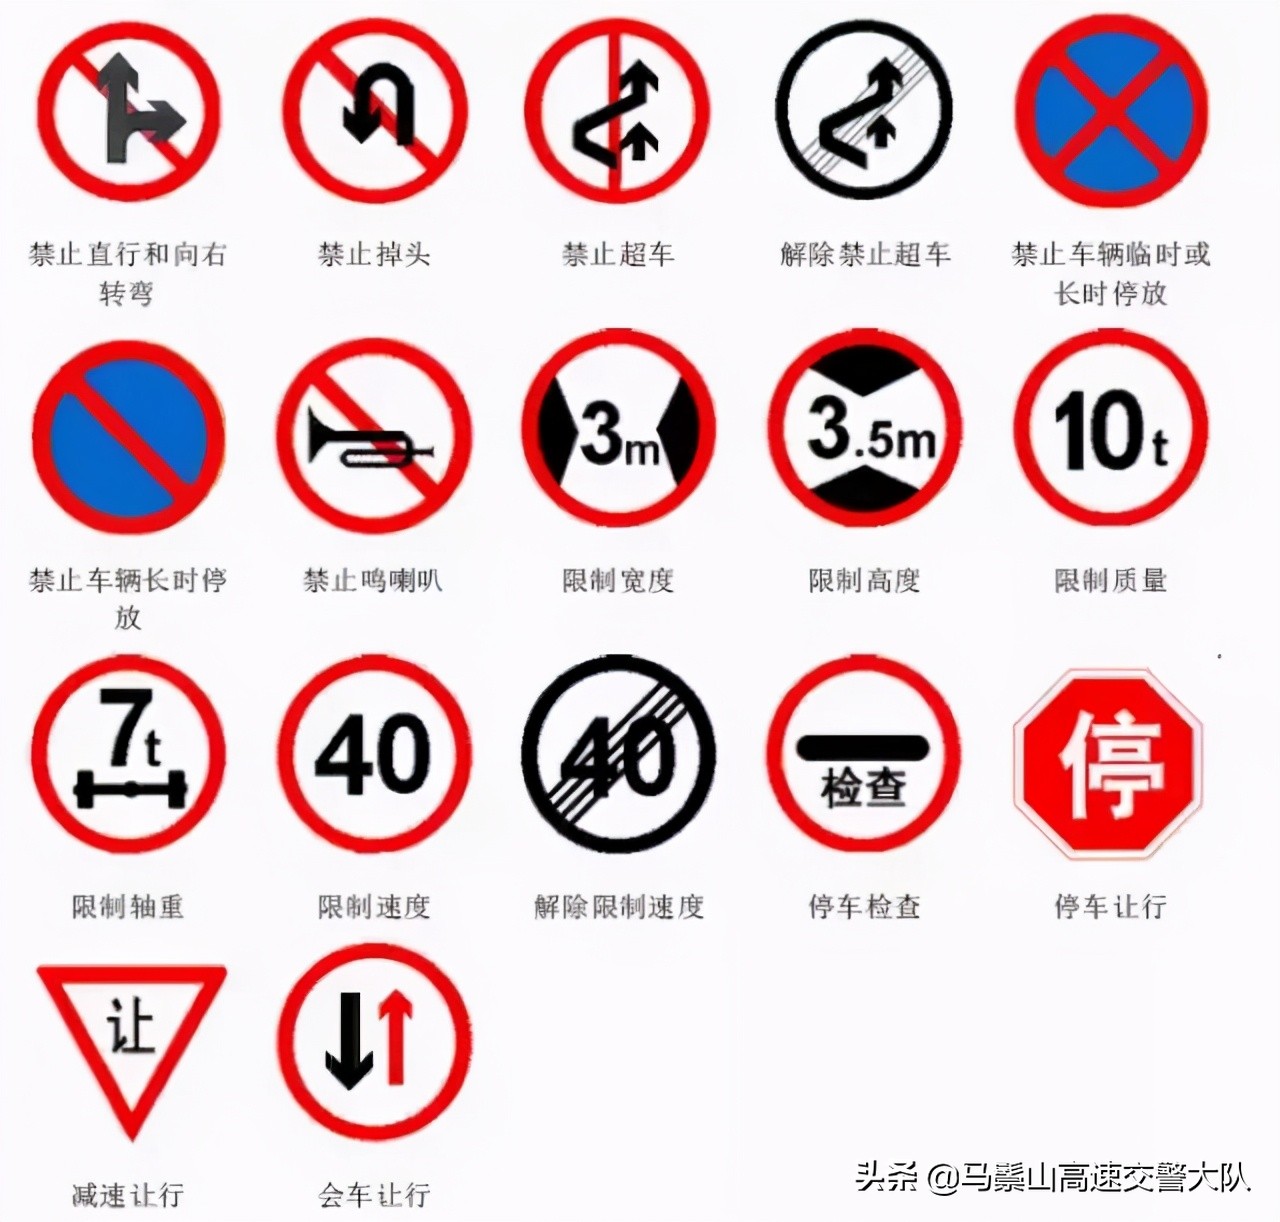 道路标志交通安全示意图交通标志图片素材免费下载 - 觅知网